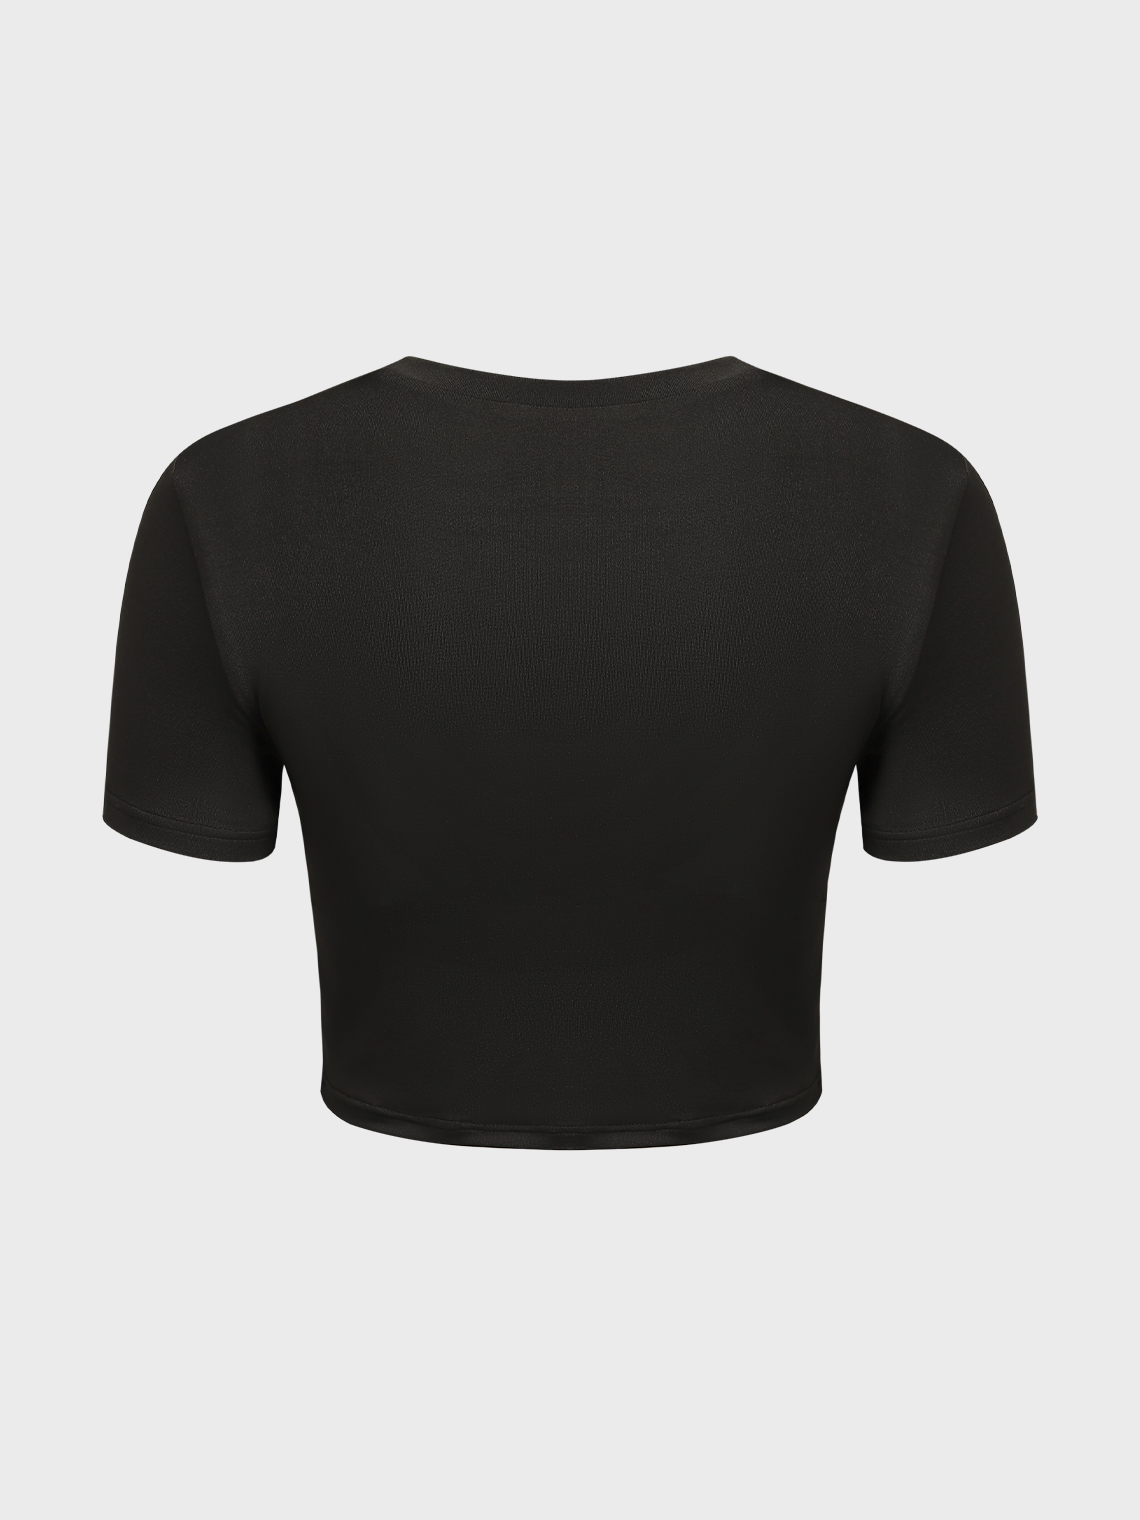 【Final Sale】Street Black Top T-Shirt